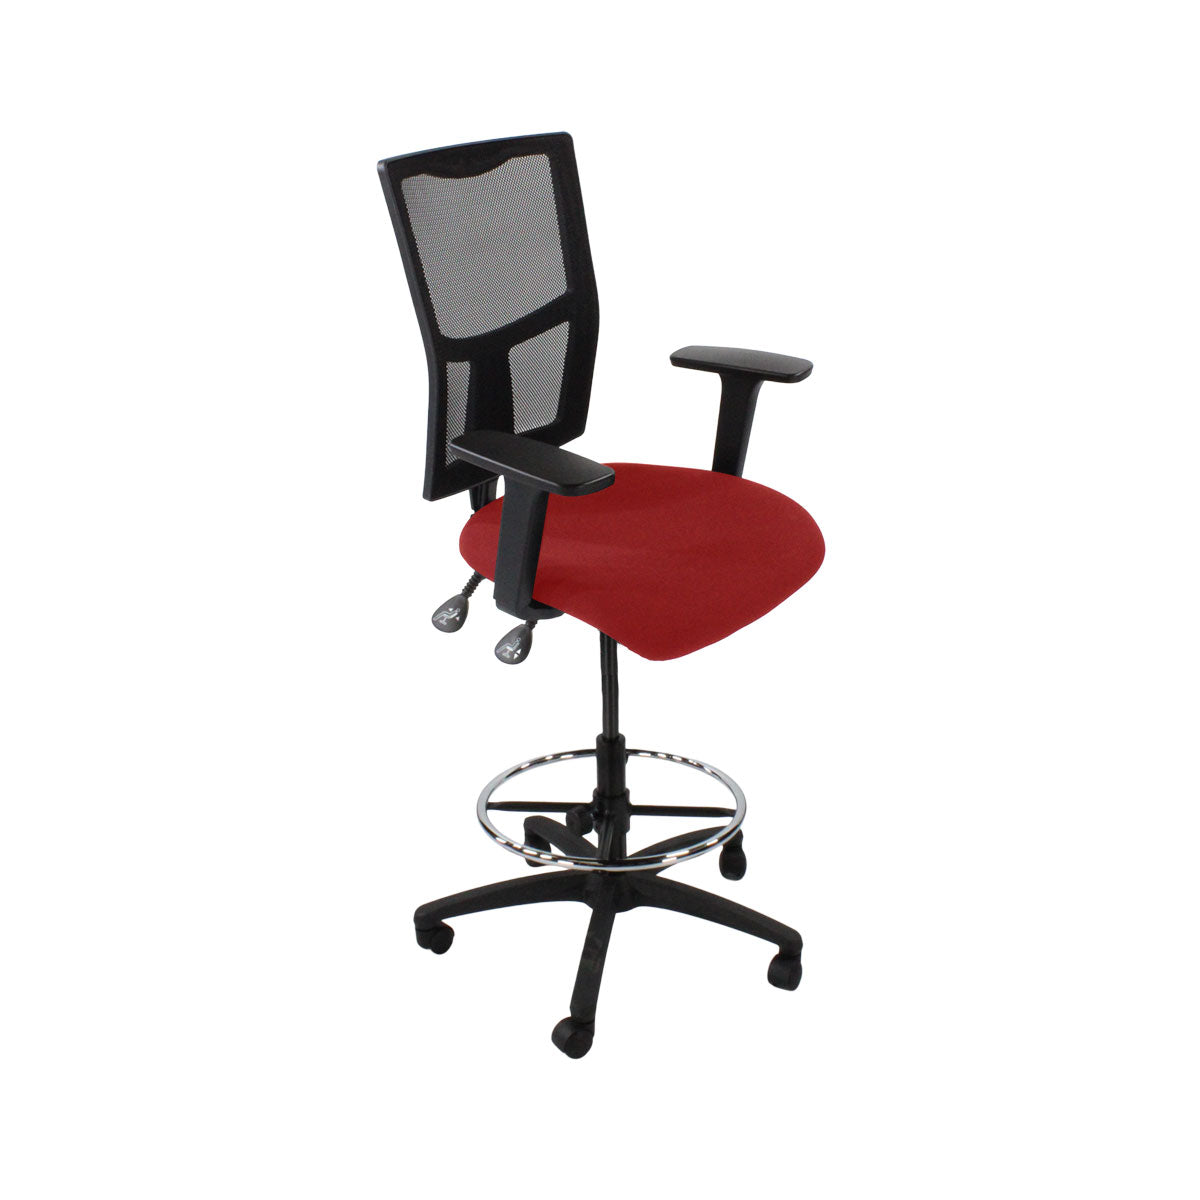 Inhaltsverzeichnis: Ergo 2 Draftsman Chair aus rotem Stoff – generalüberholt